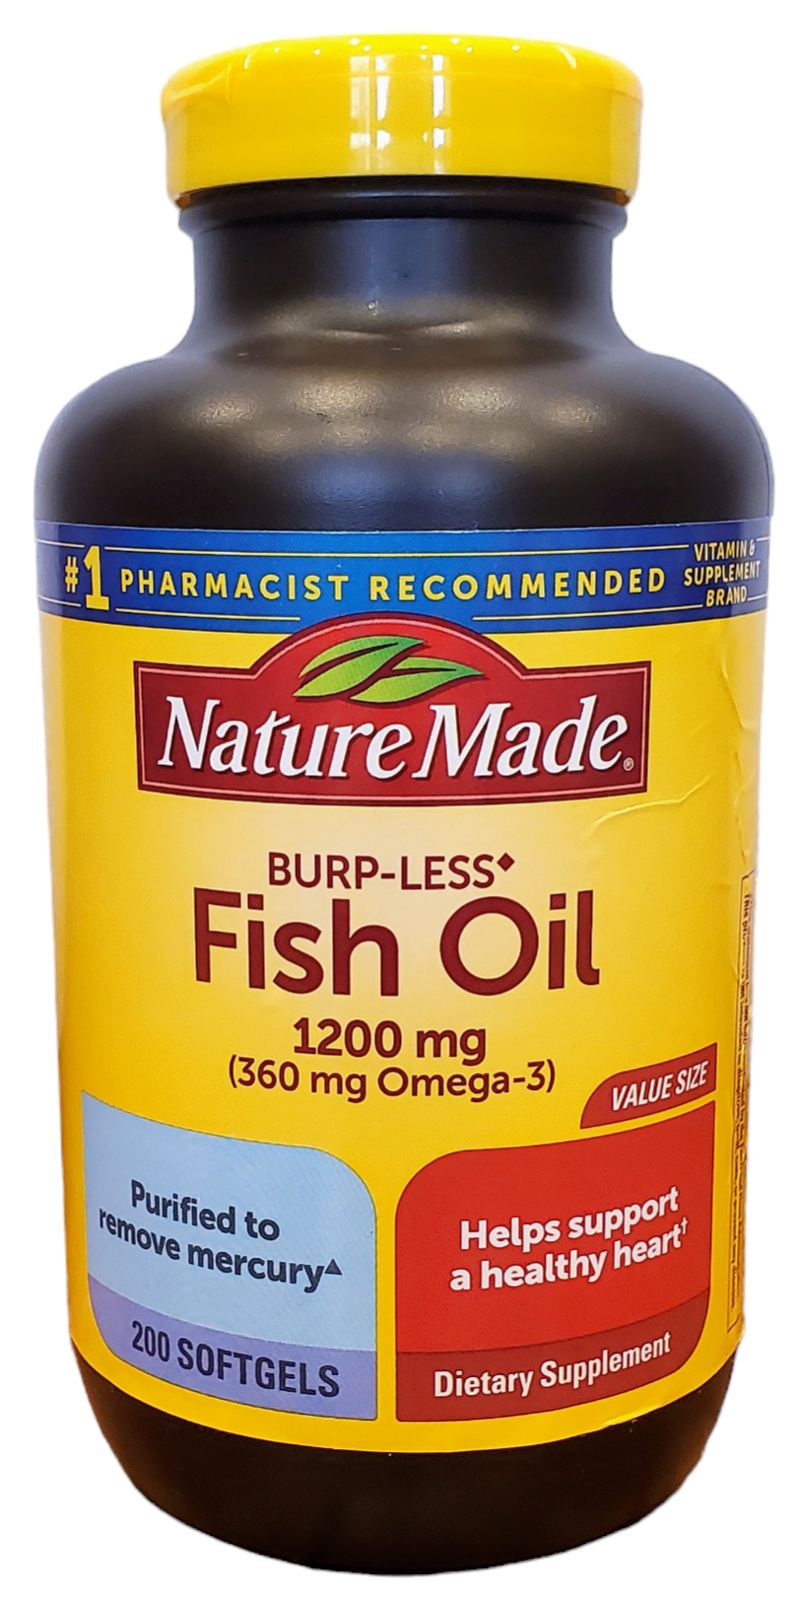 FISH OIL 200 SOFTGEL Omega 3 Nature Made 1200 mg Heart Brain Eye Support EPA DHA - $20.99